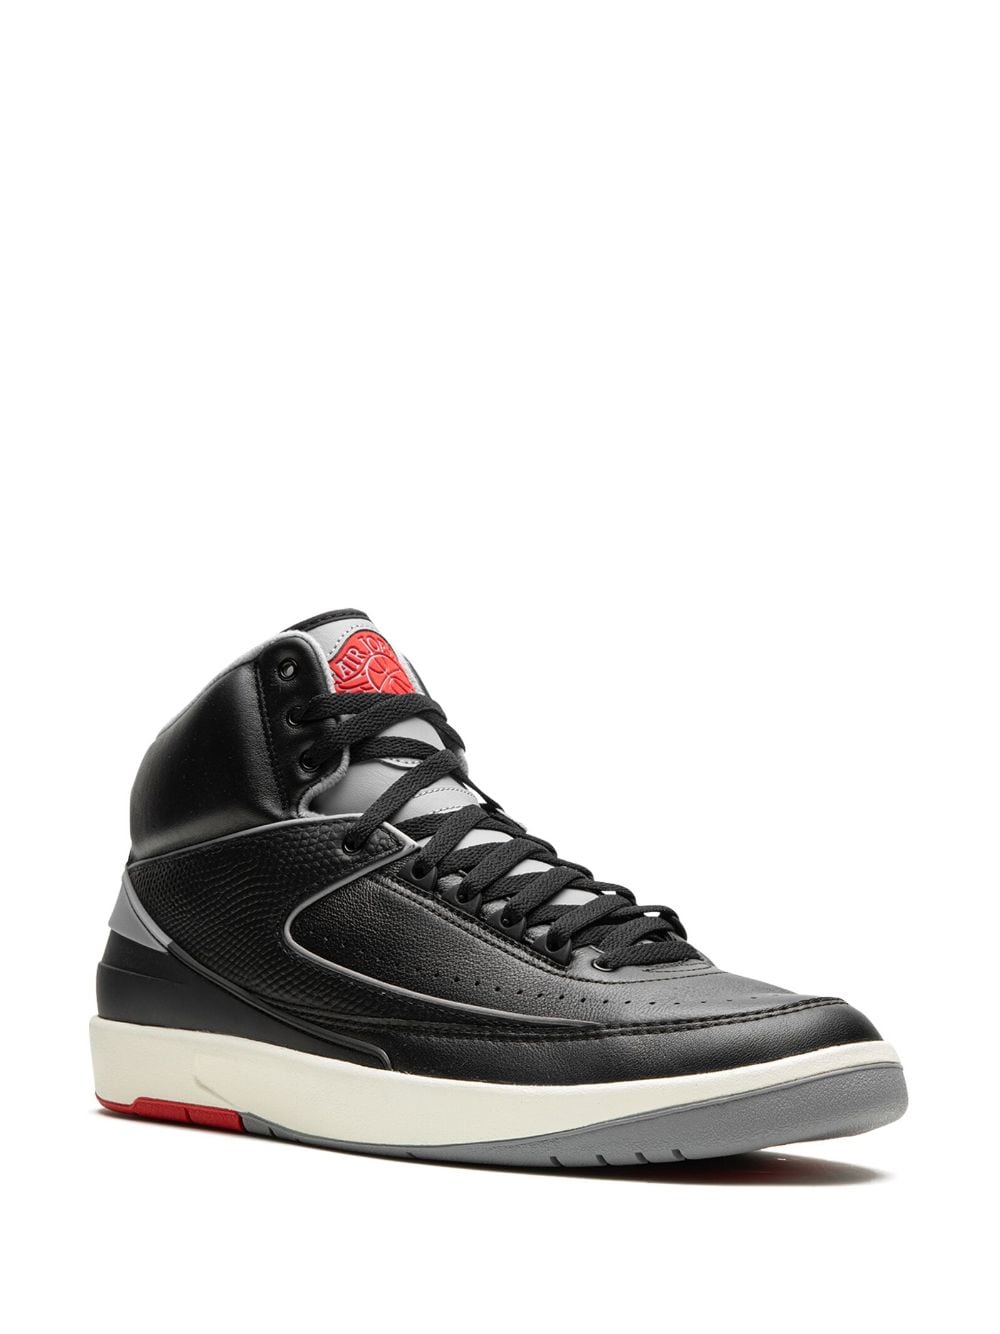 Shop Jordan Air  2 "black Cement" Sneakers